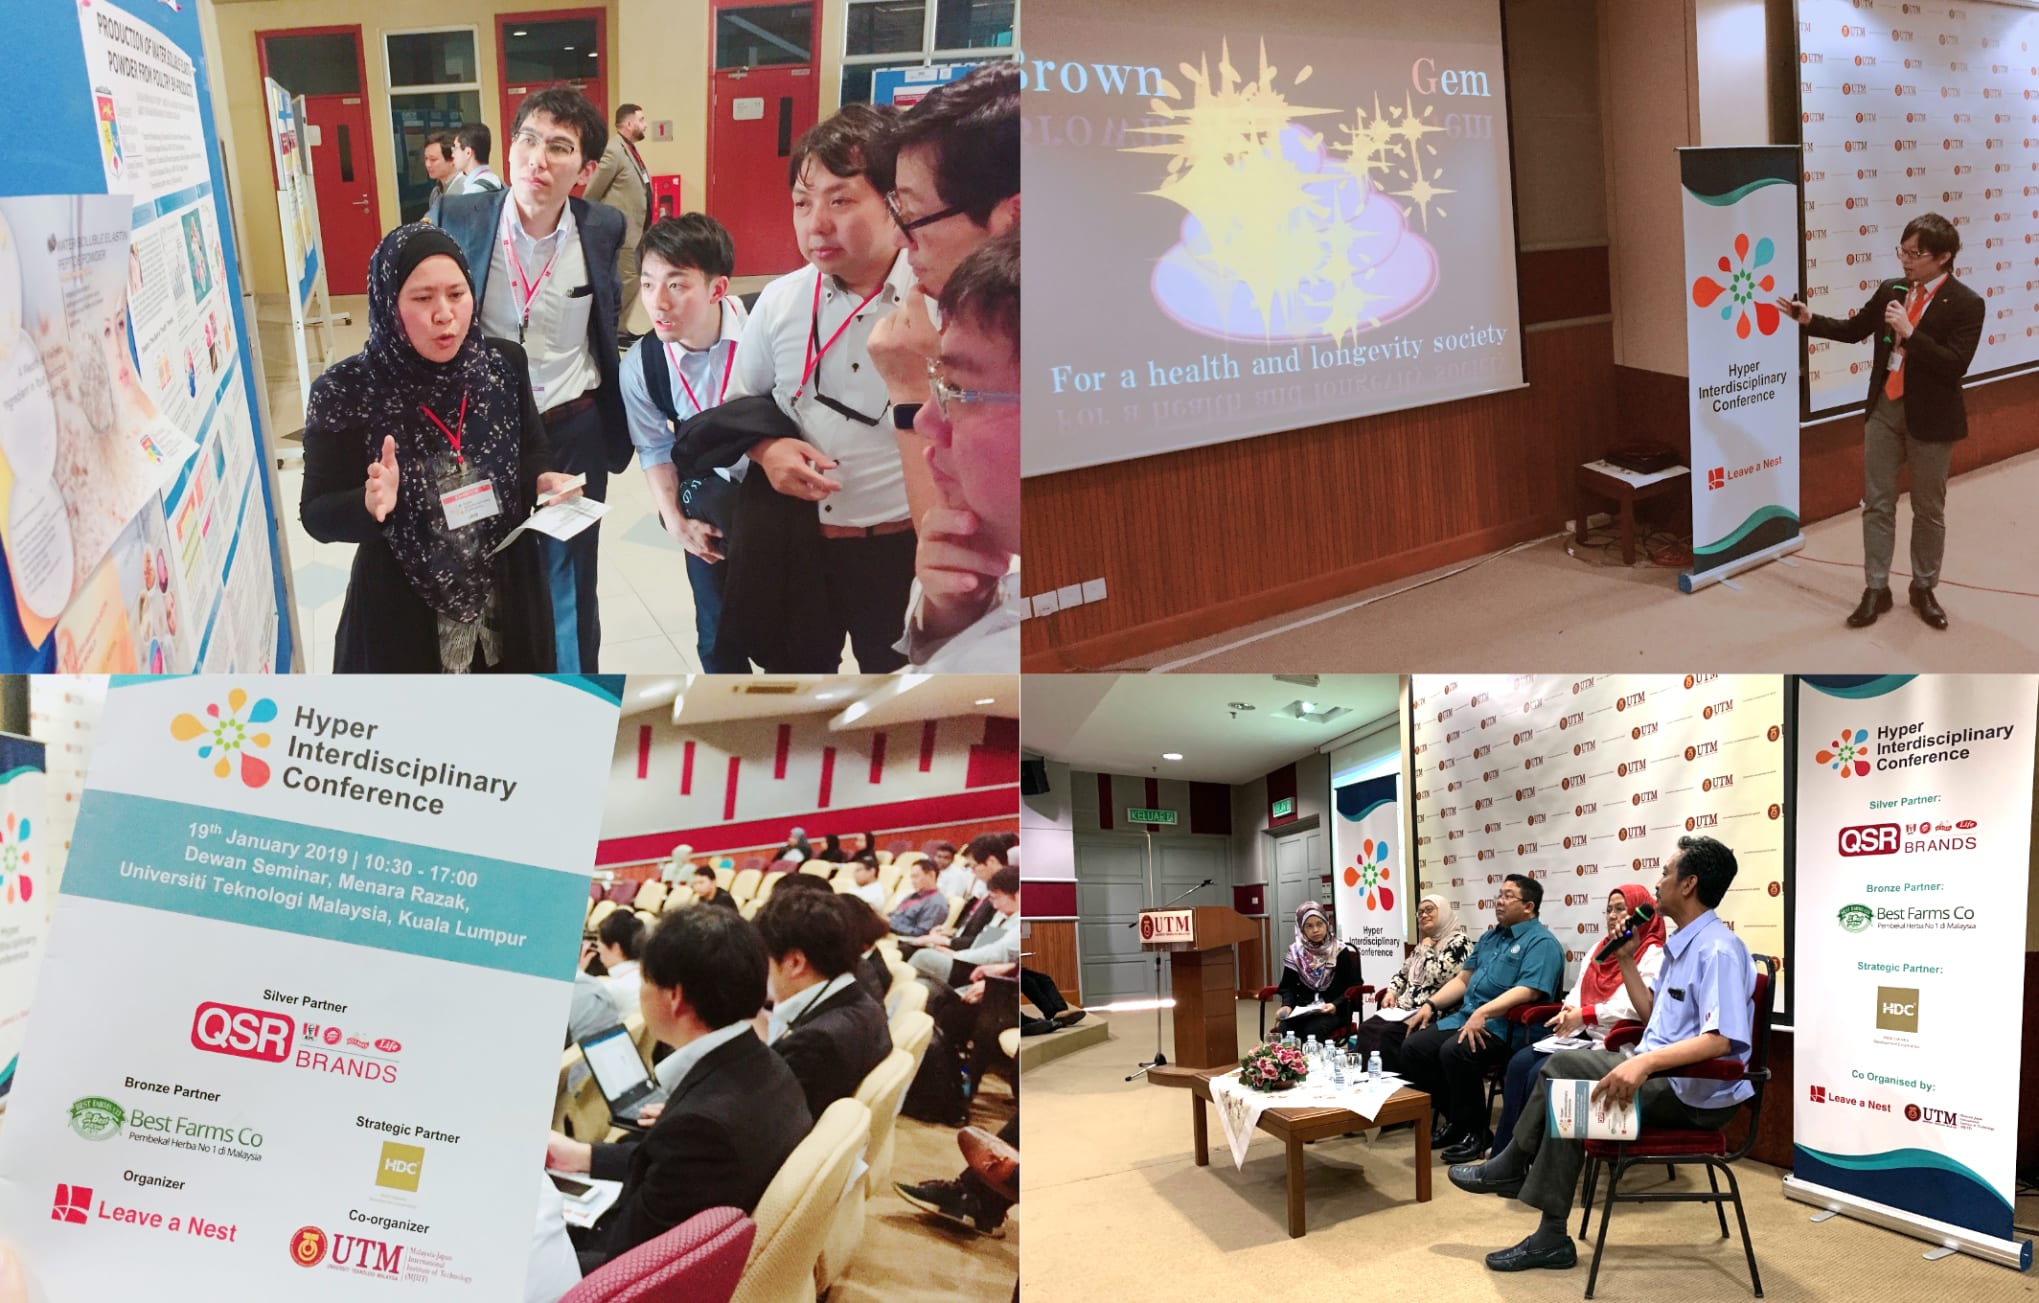 記念すべき超異分野学会初の海外大会、Hyper Interdisciplinary conference Malaysiaを開催しました